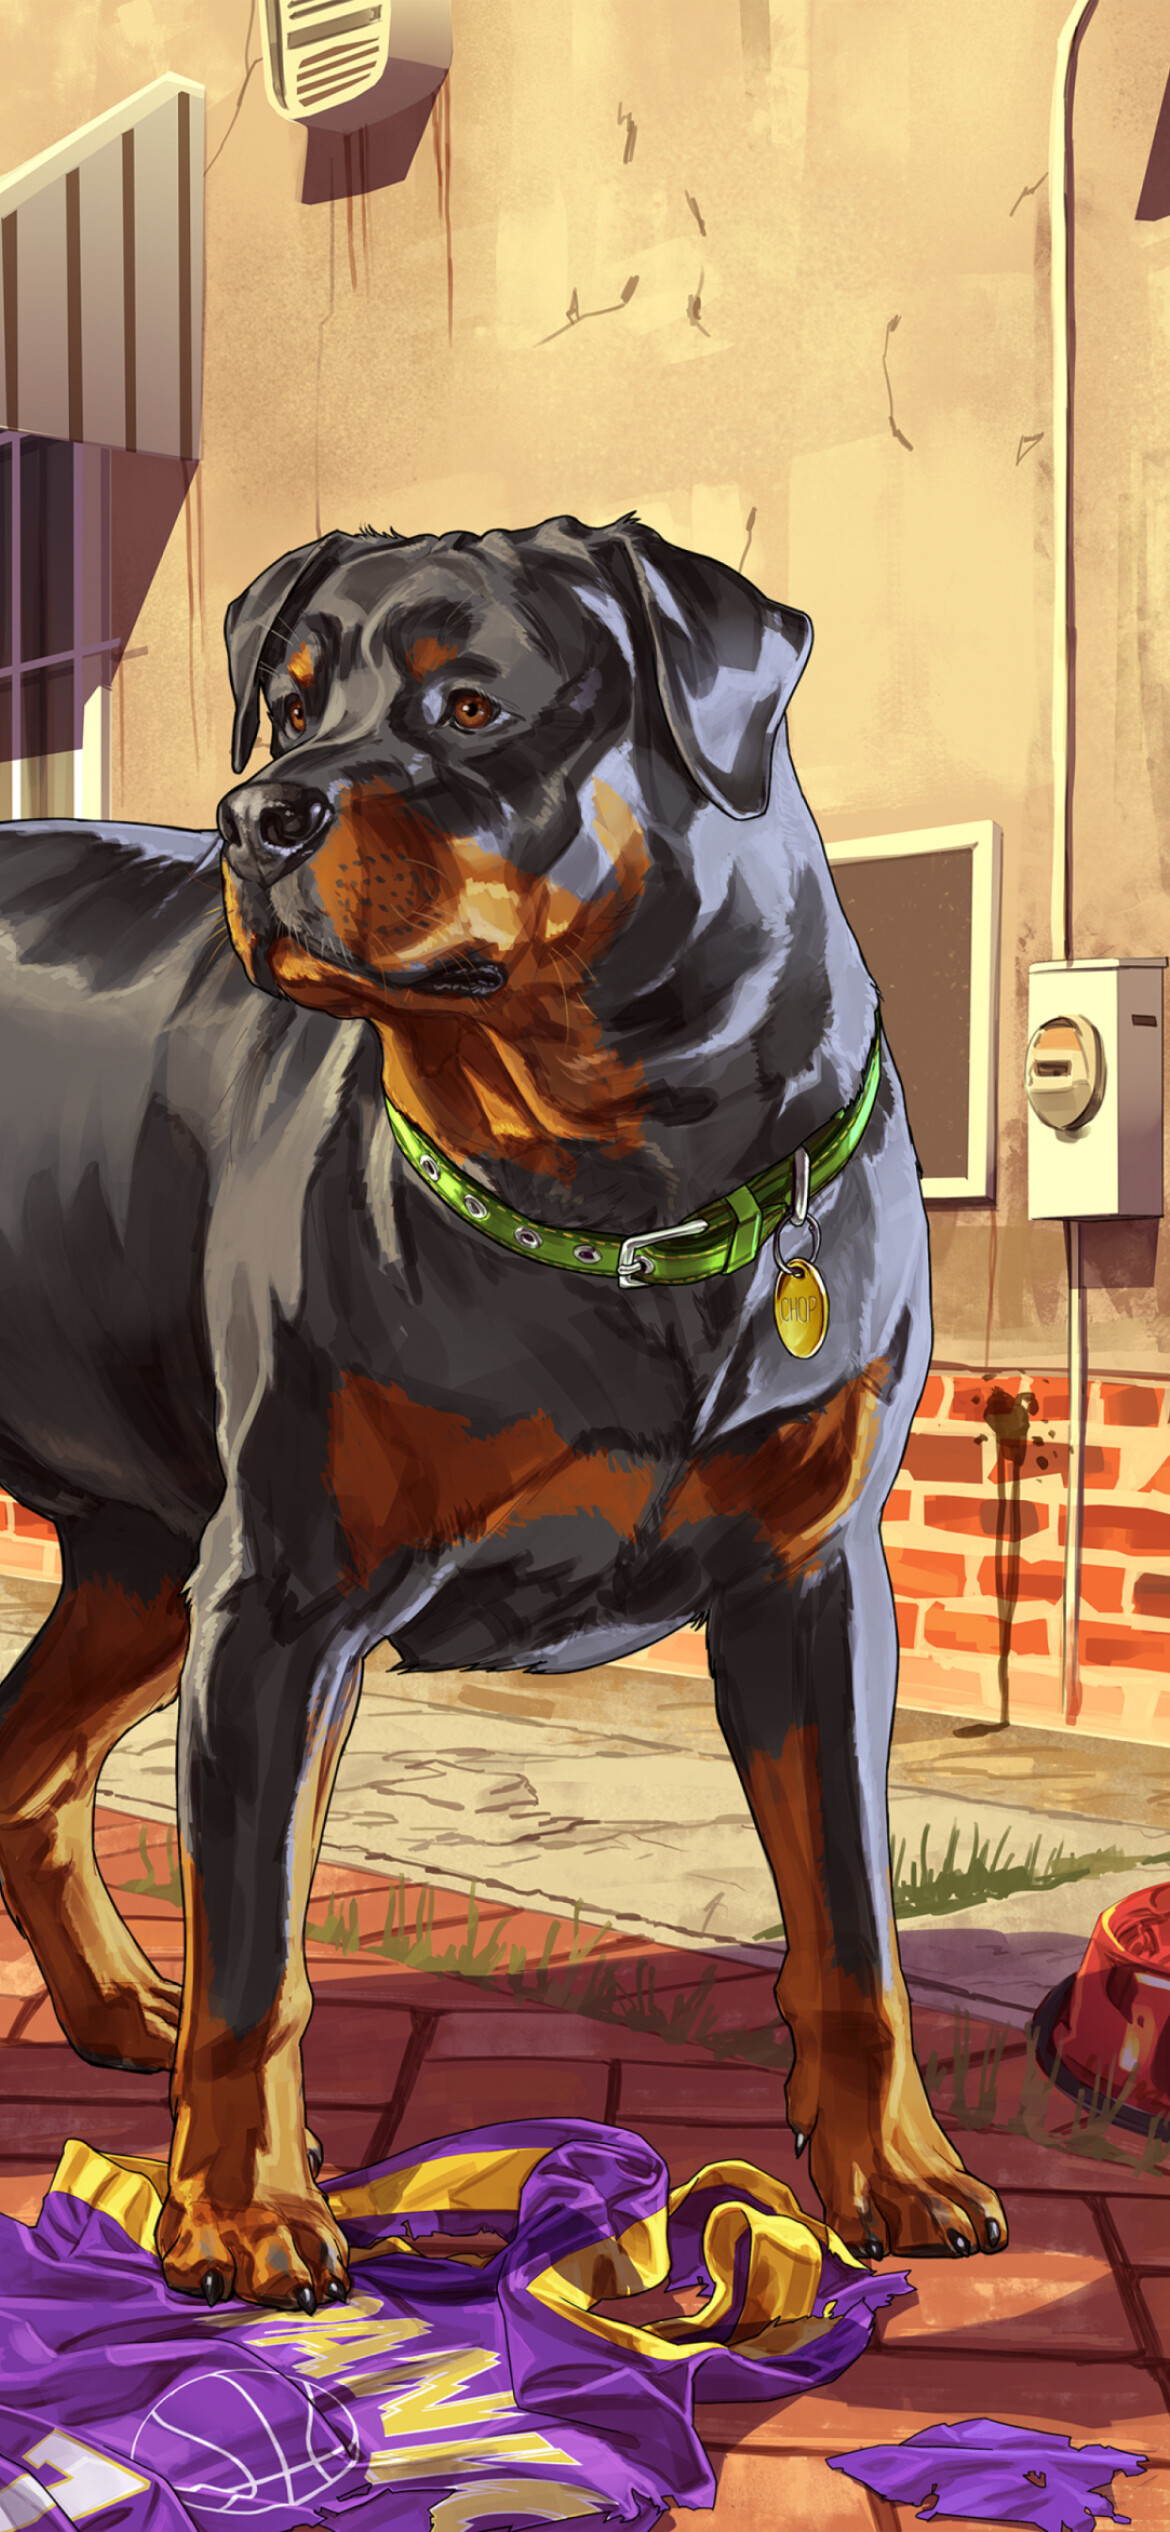 Grand Theft Auto 5: Chop, Lamar Davis's Rottweiler dog. 1170x2540 HD Wallpaper.